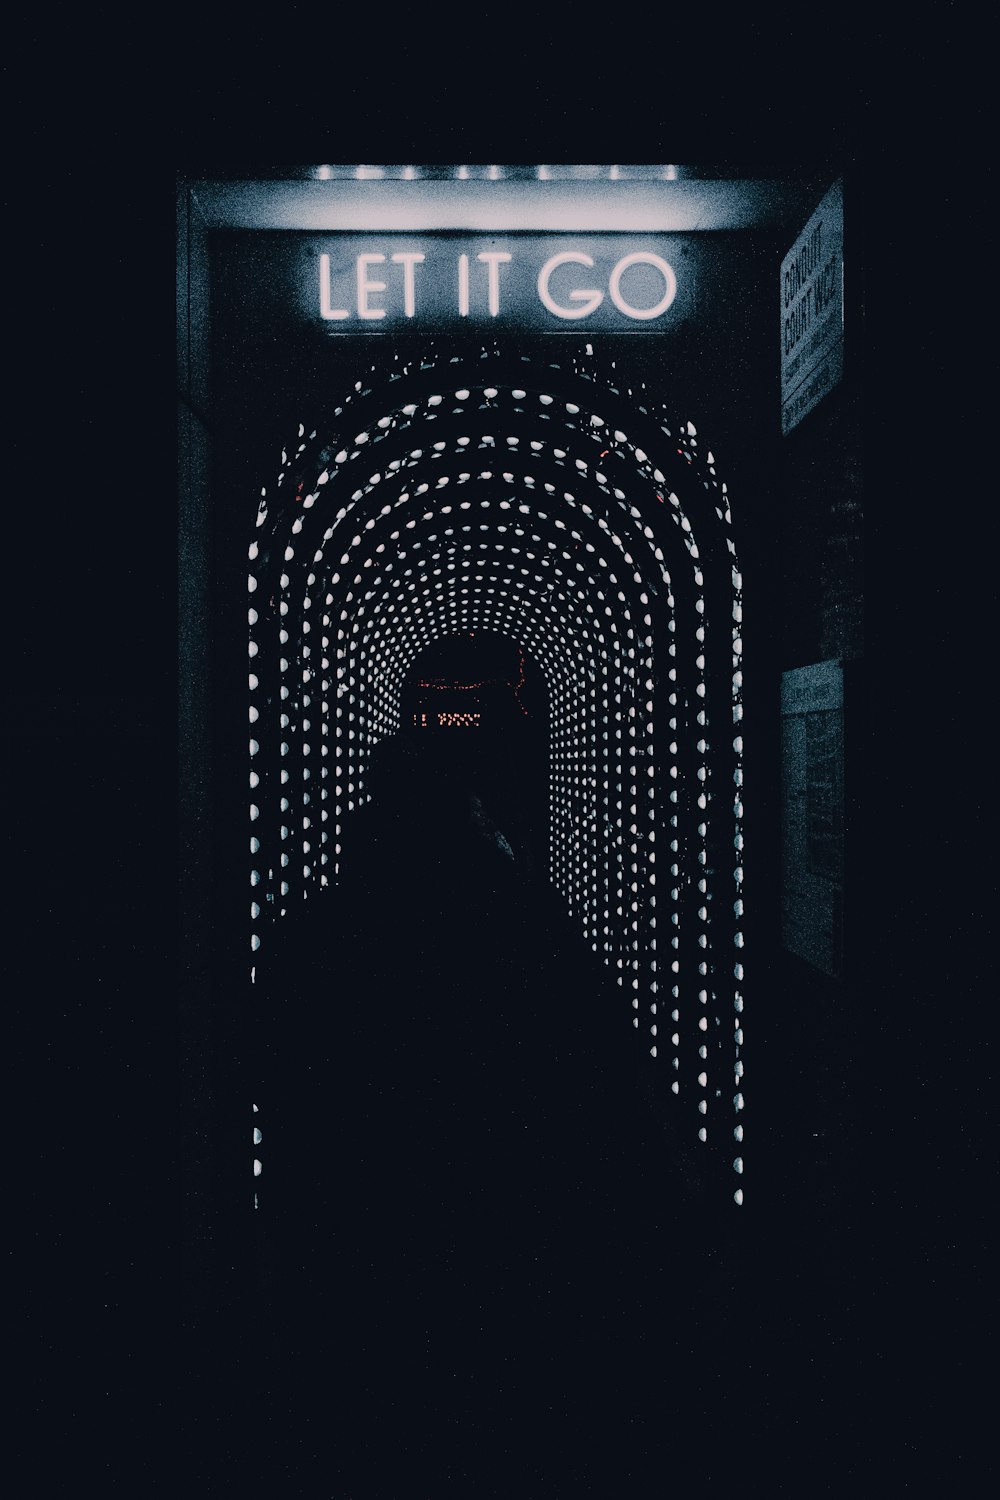 Un túnel oscuro con un letrero que dice Let It Go